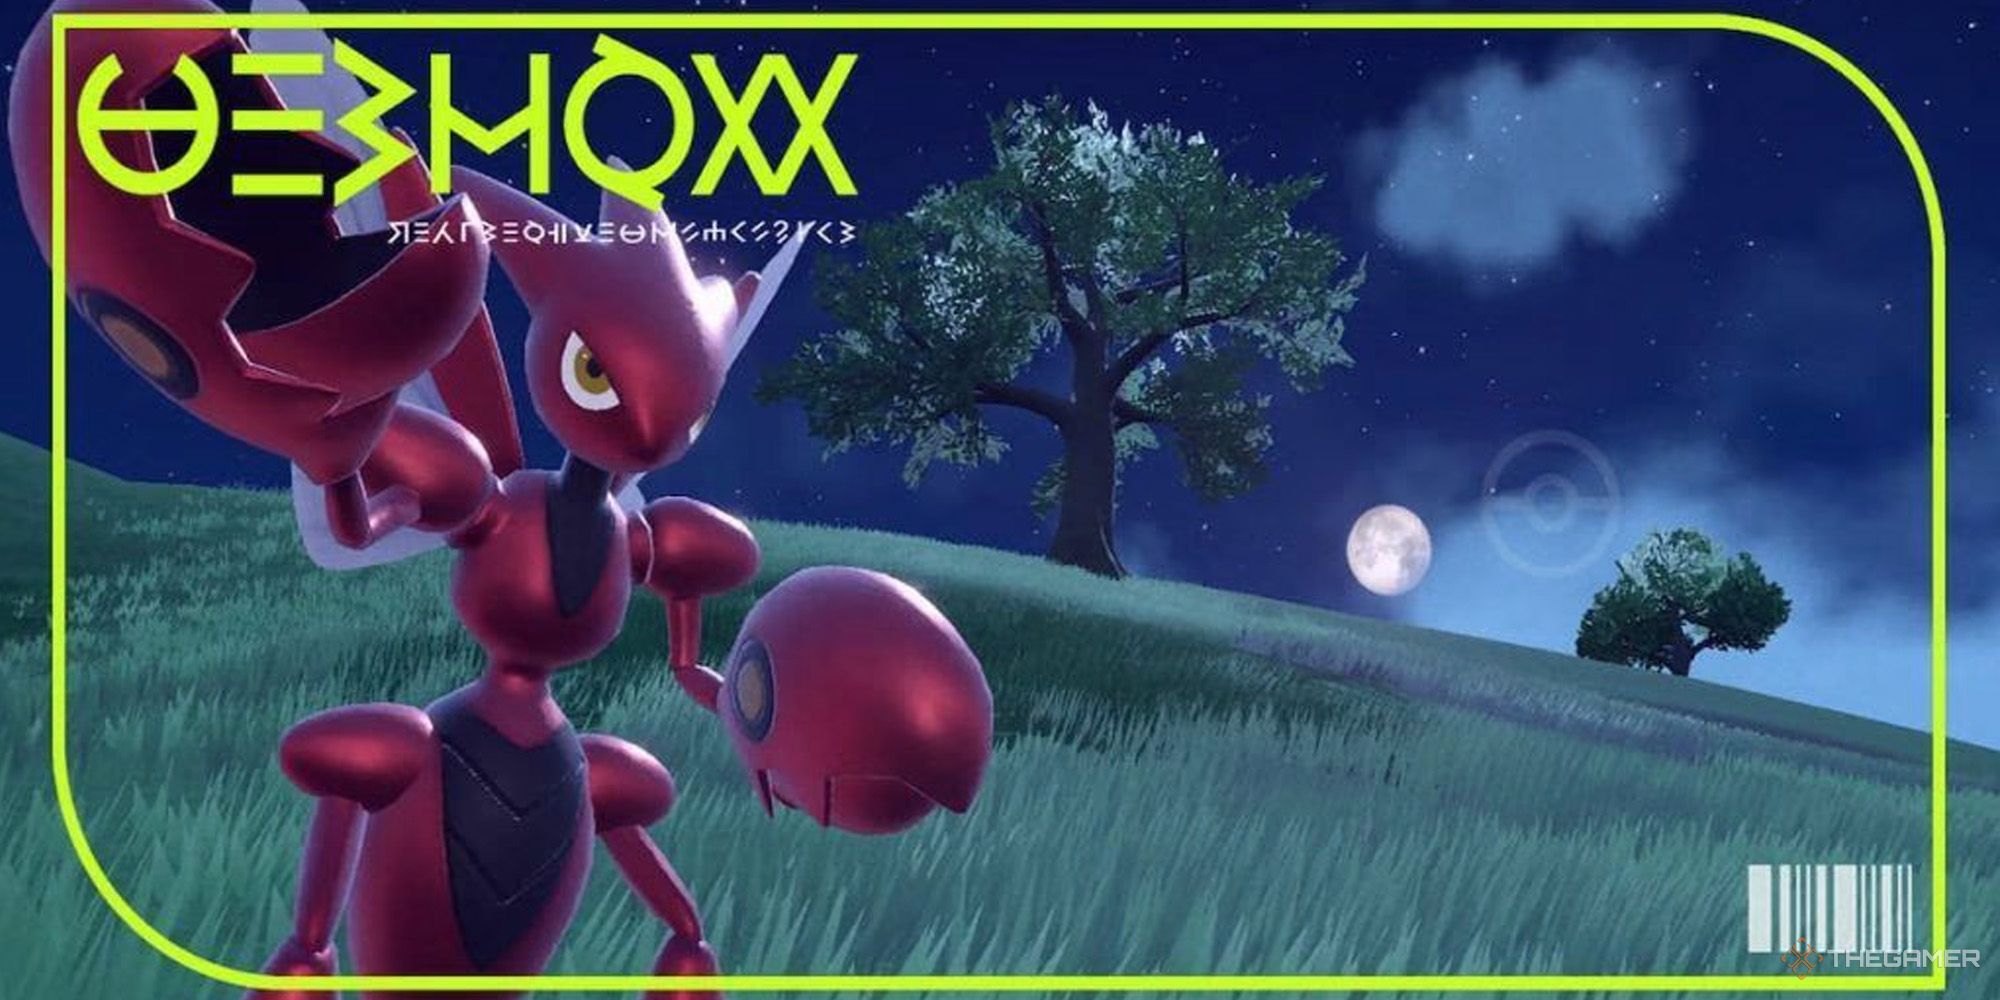 Scizor's pokedex image in Pokemon Scarlet & Violet.